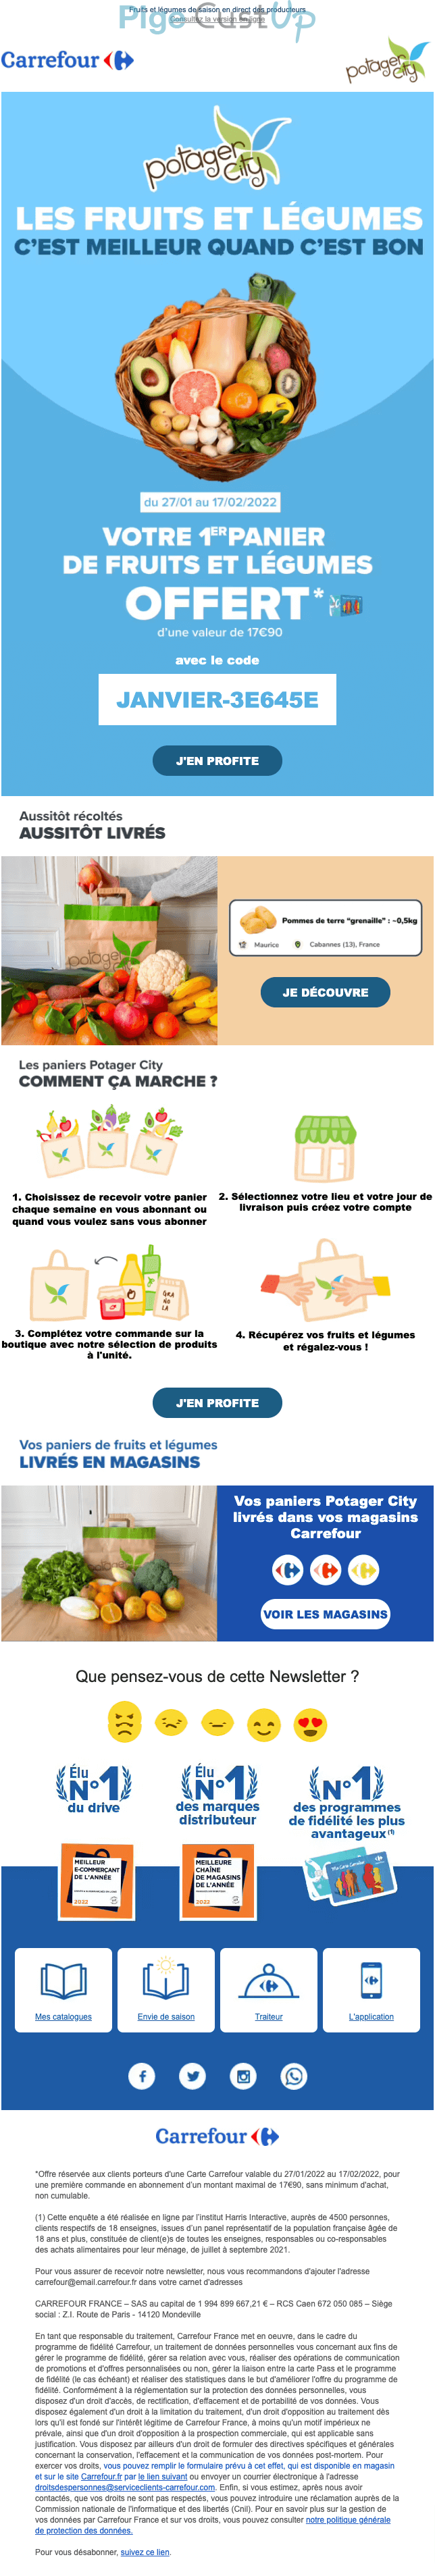 Exemple de Type de media  e-mailing - Carrefour - Marketing Acquisition - Gratuit - Cadeau - Marketing fidélisation - Testeurs / Ambassadeurs